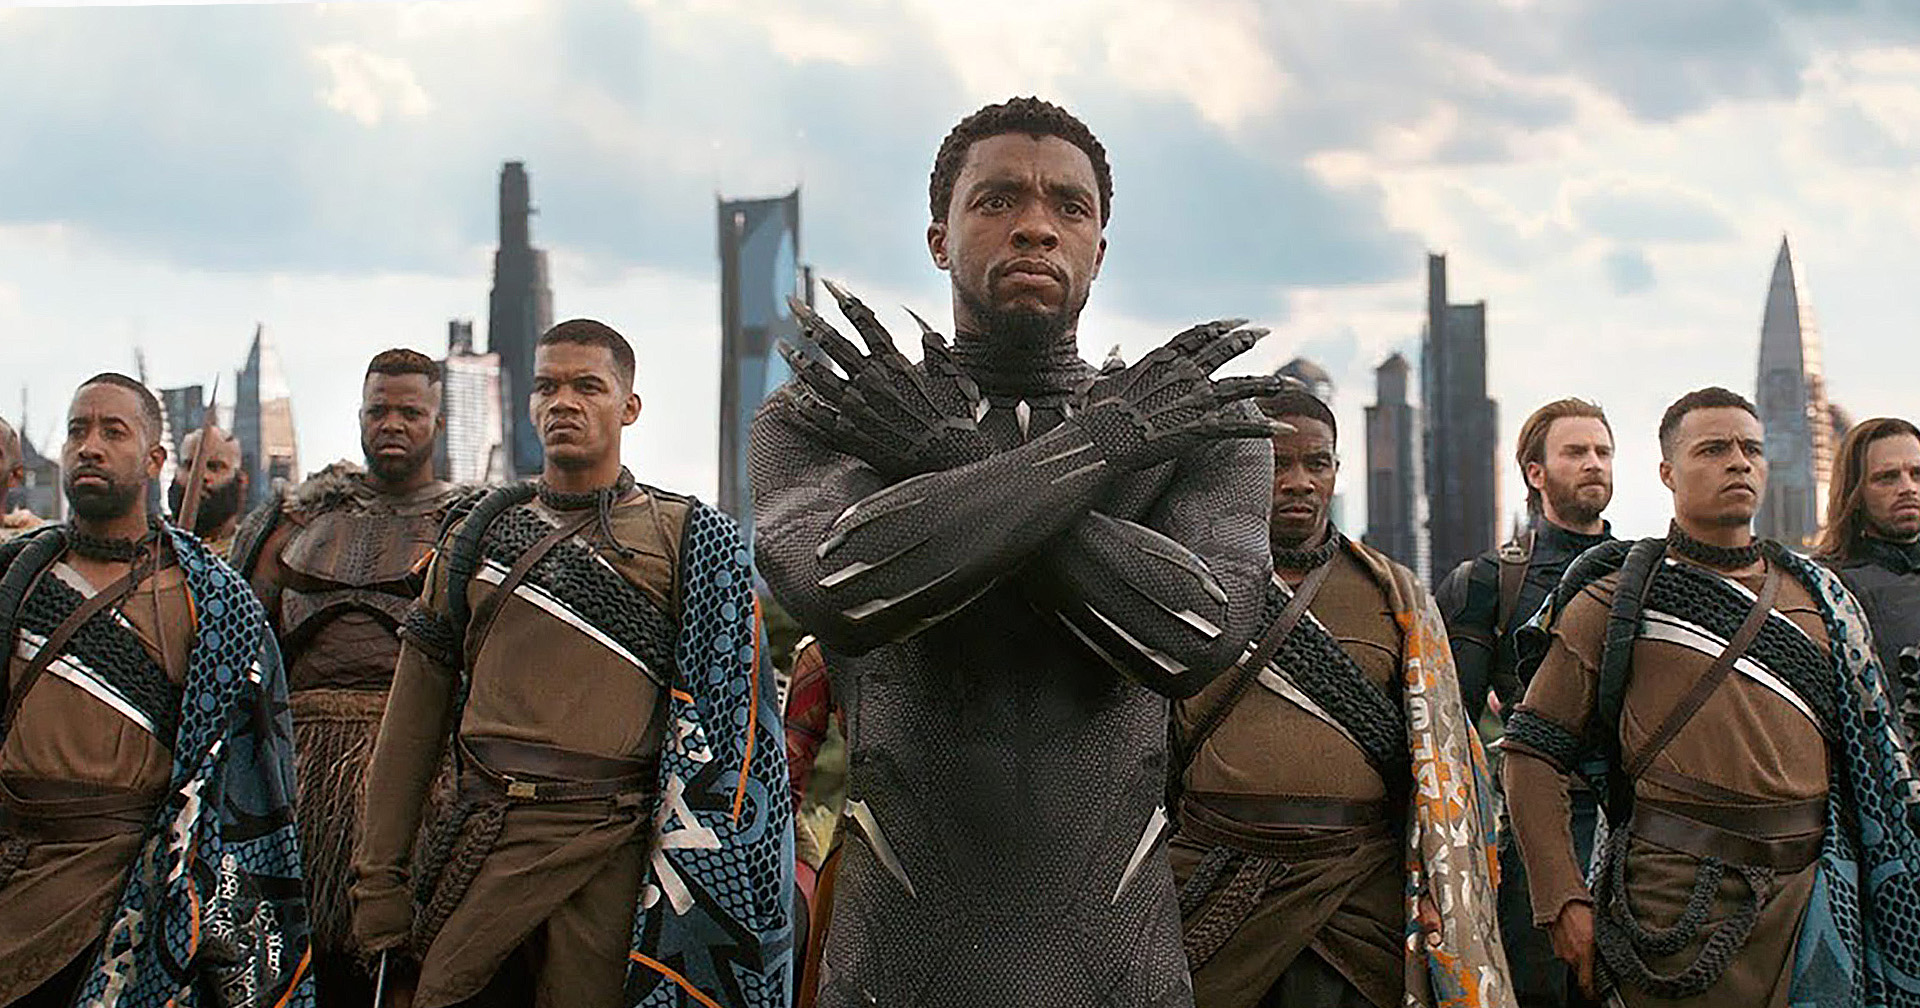 รีวิวหนัง Black Panther - แบล็ค แพนเธอร์ กษัตริย์องค์ใหม่ของอาณาจักรวากานดา